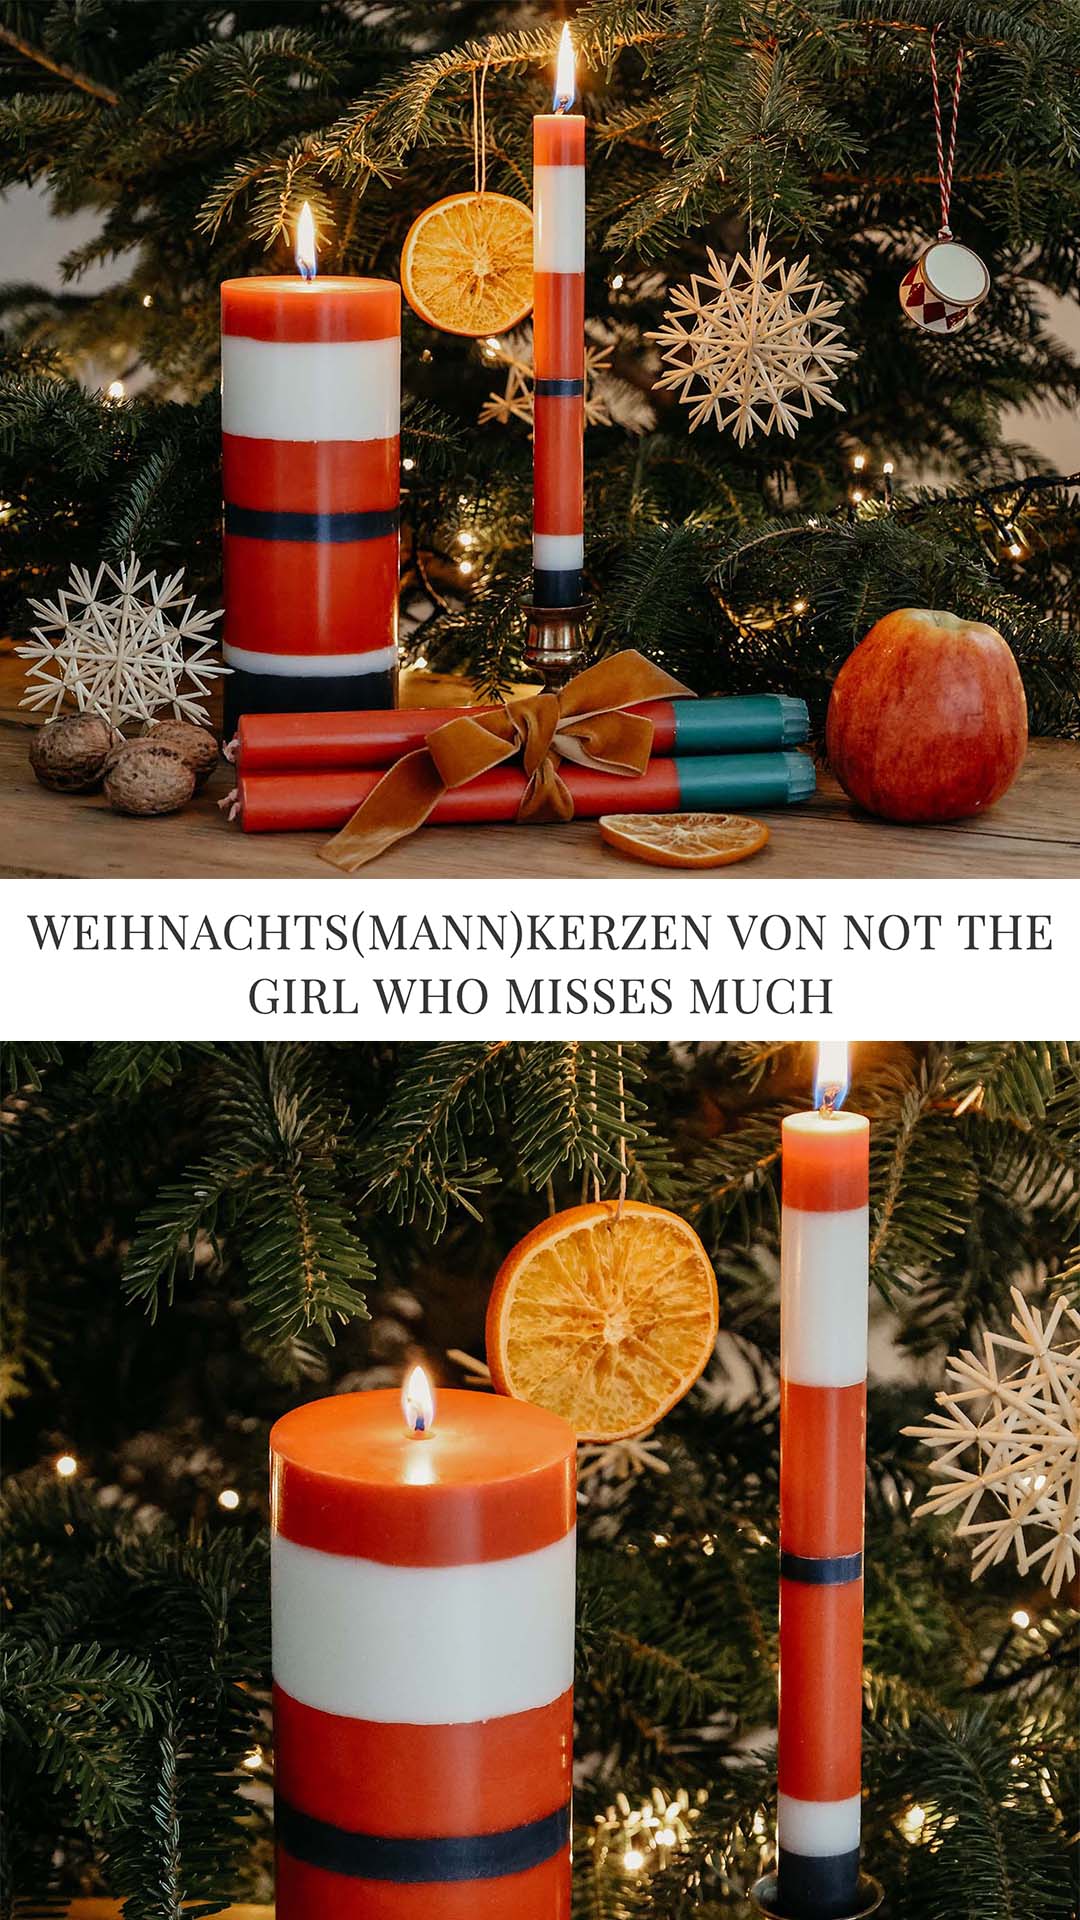 Weihnachtsmannkerze von Not the girl who misses much